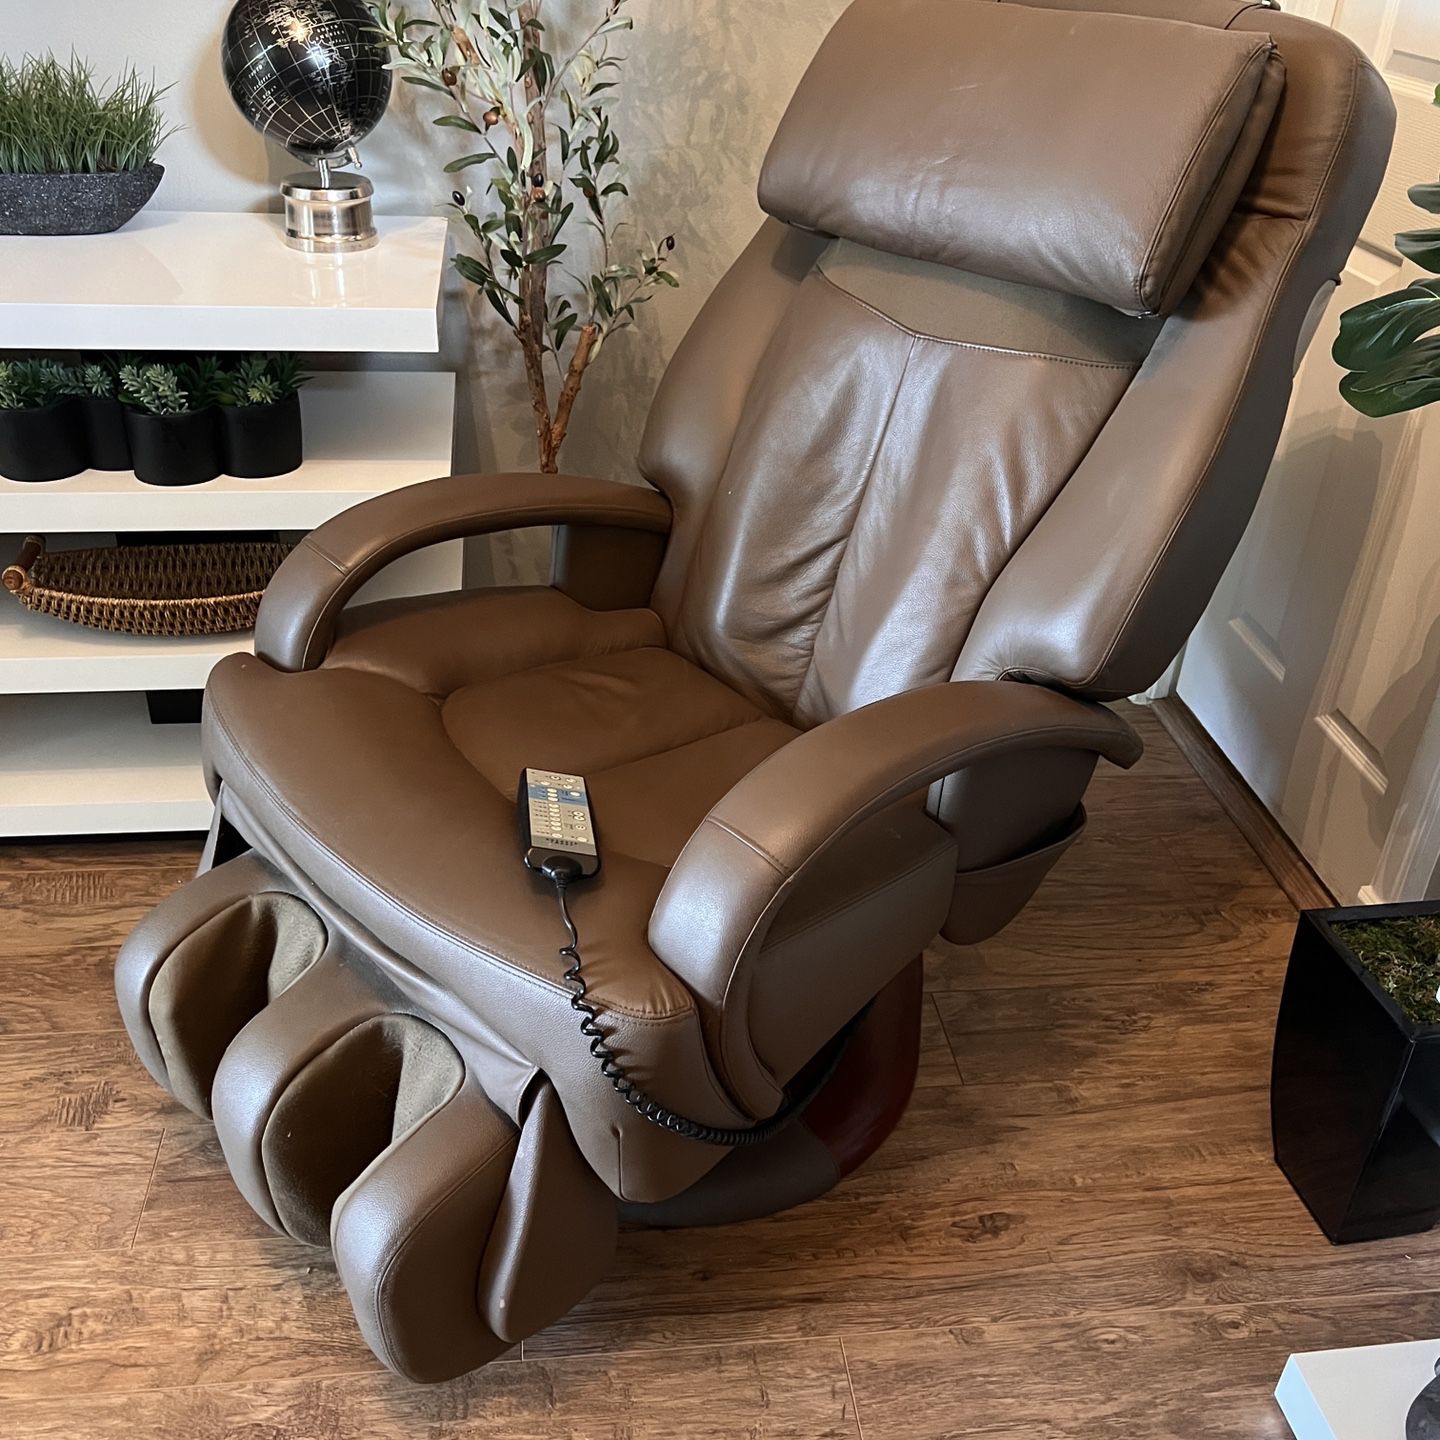 Massage Chair - Sharper Image MAKE AN OFFER